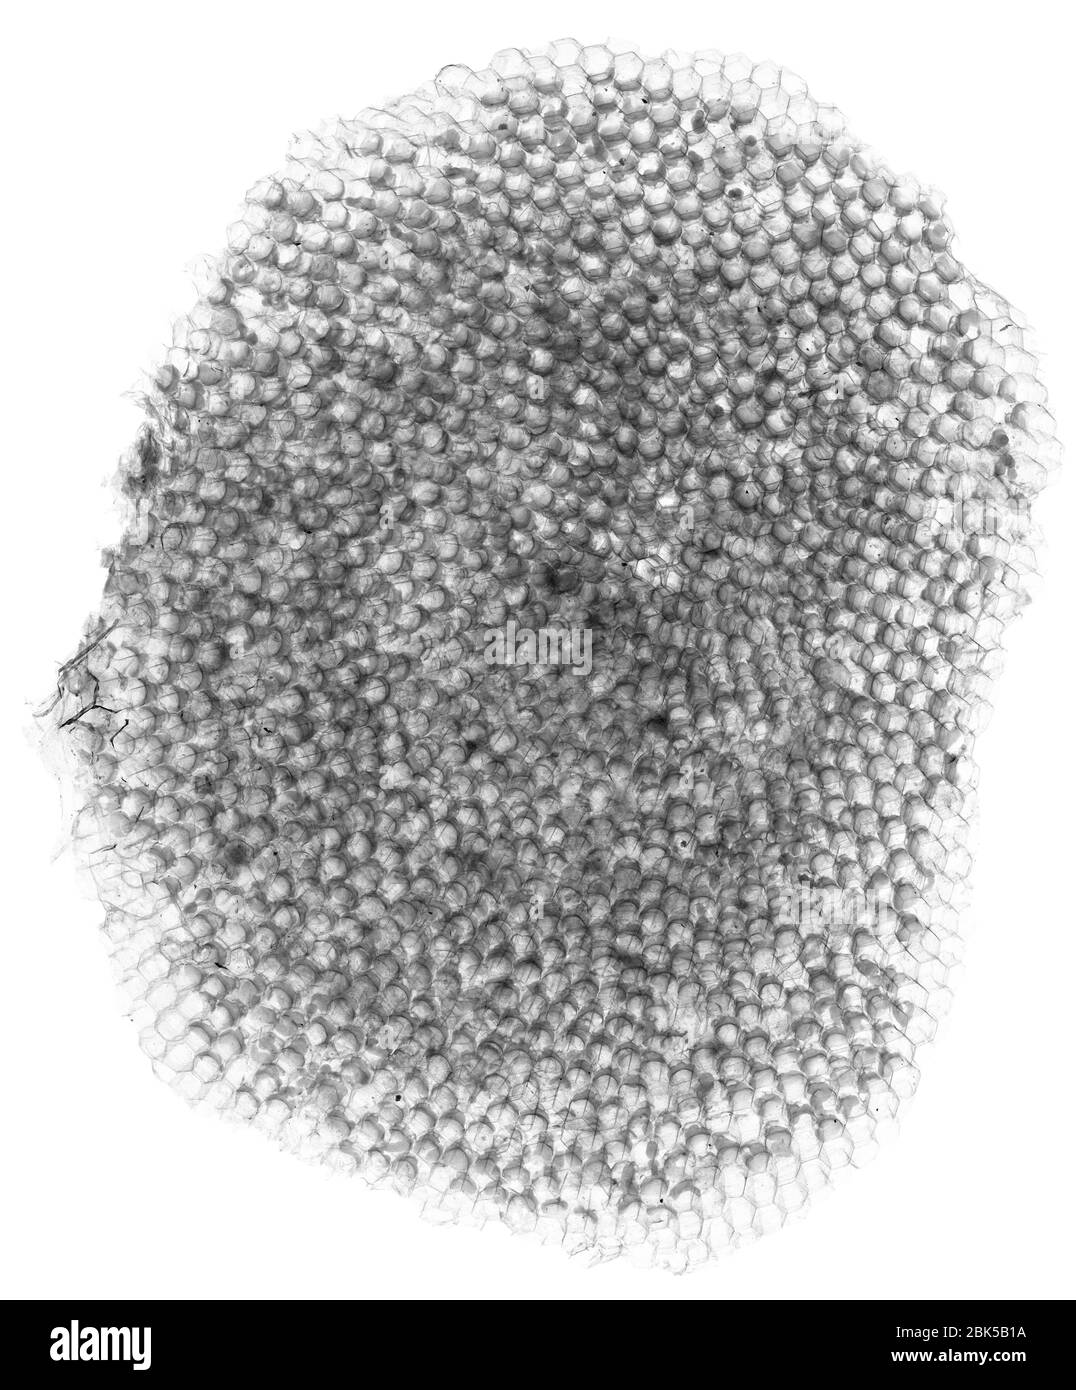 Honeycomb, X-ray. Stock Photo